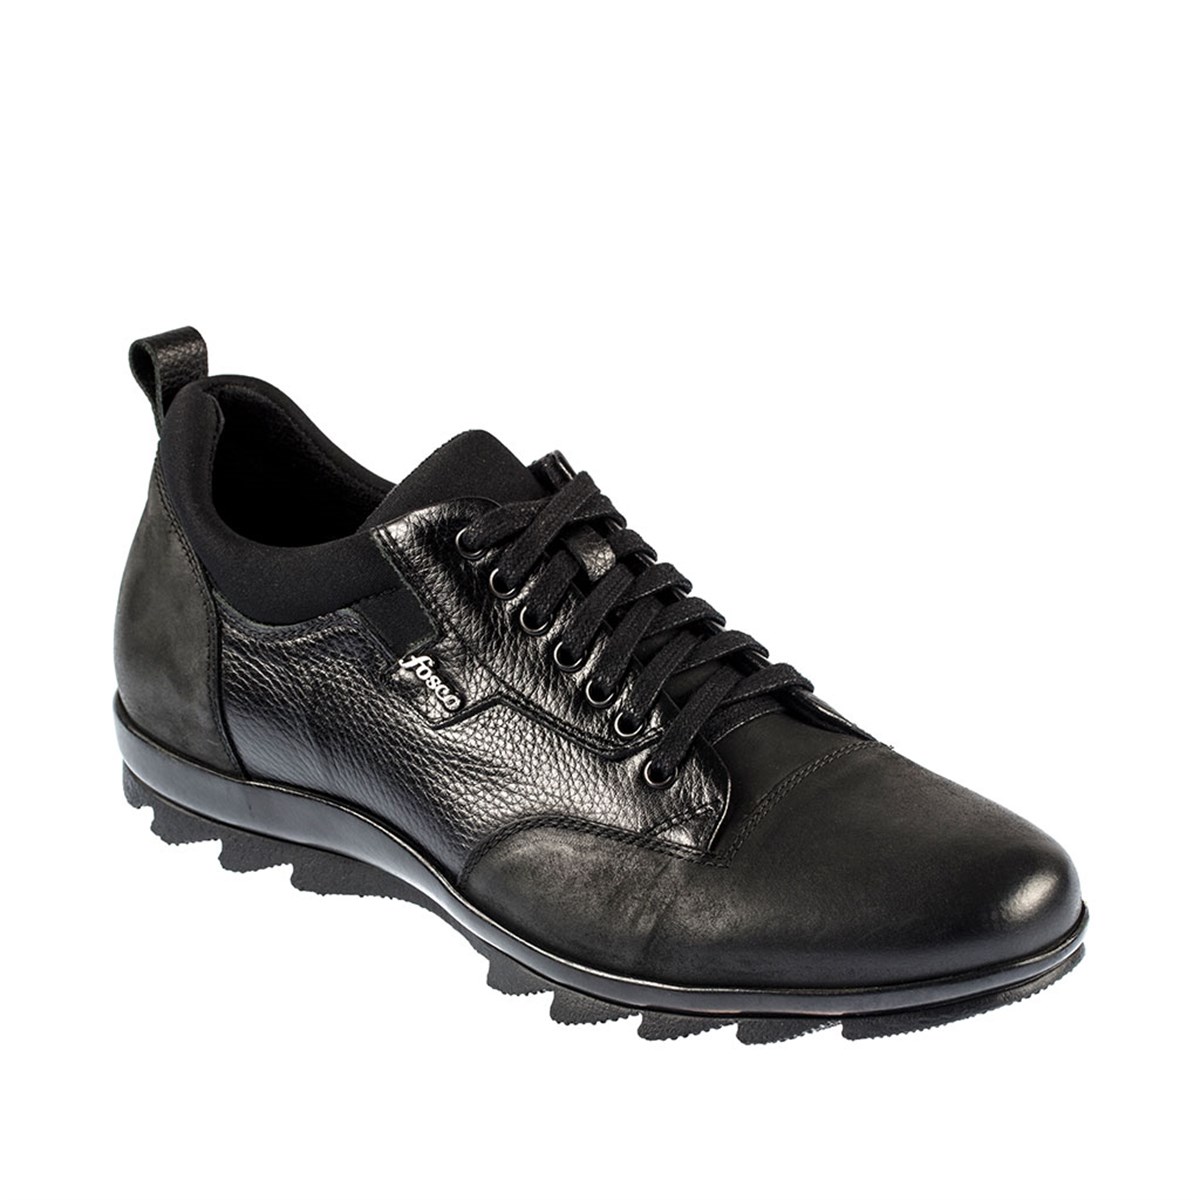 Bağcıklı Hakiki Deri Kauçuk Taban Sıcak Astar Kışlık Erkek Ayakkabı, Renk: Siyah, Beden: 39